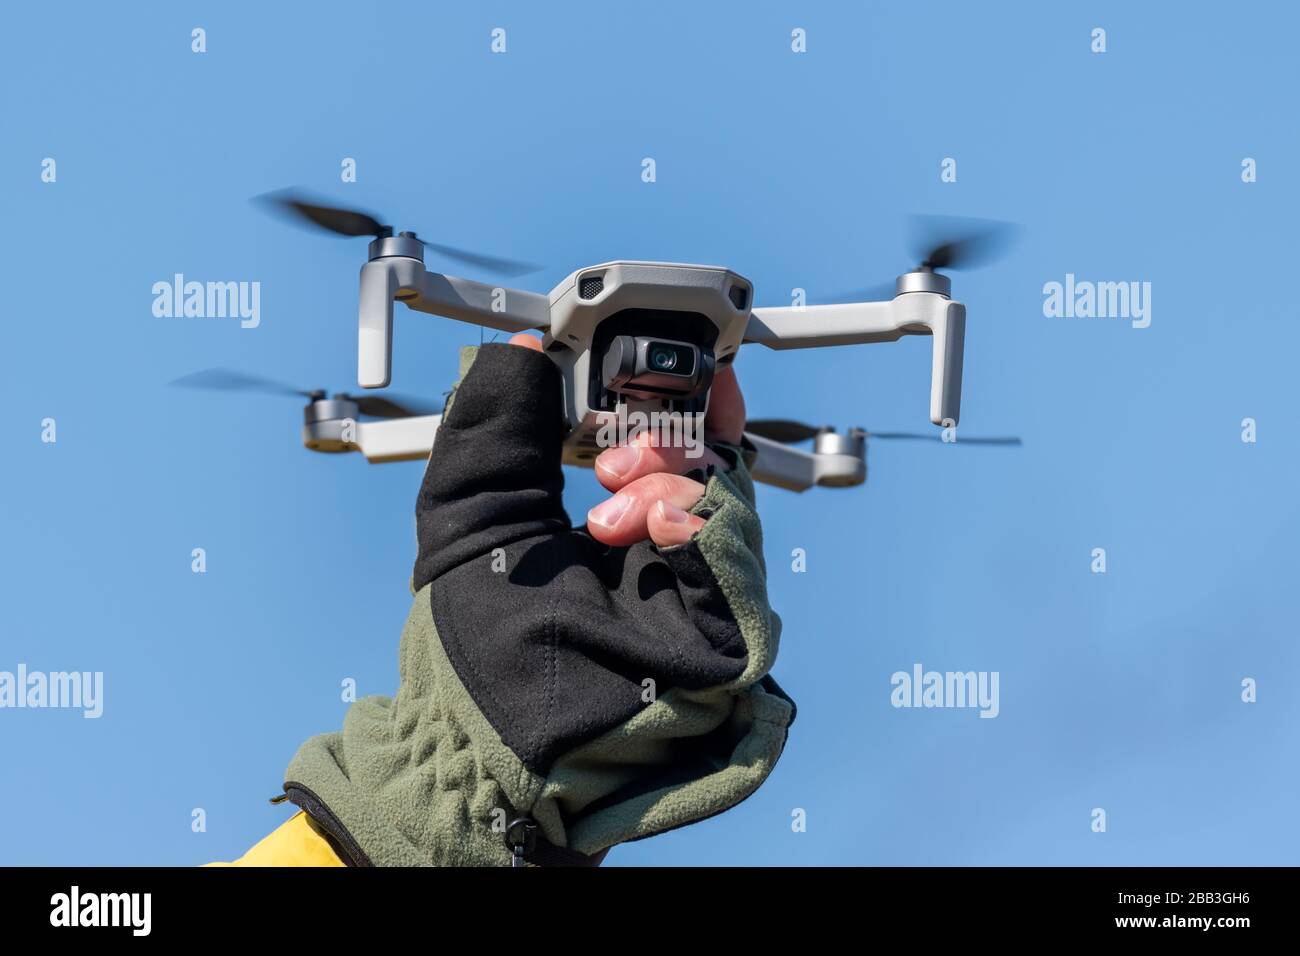 Drone Quadcopter pendant le vol une journée ensoleillée sur fond bleu ciel Banque D'Images